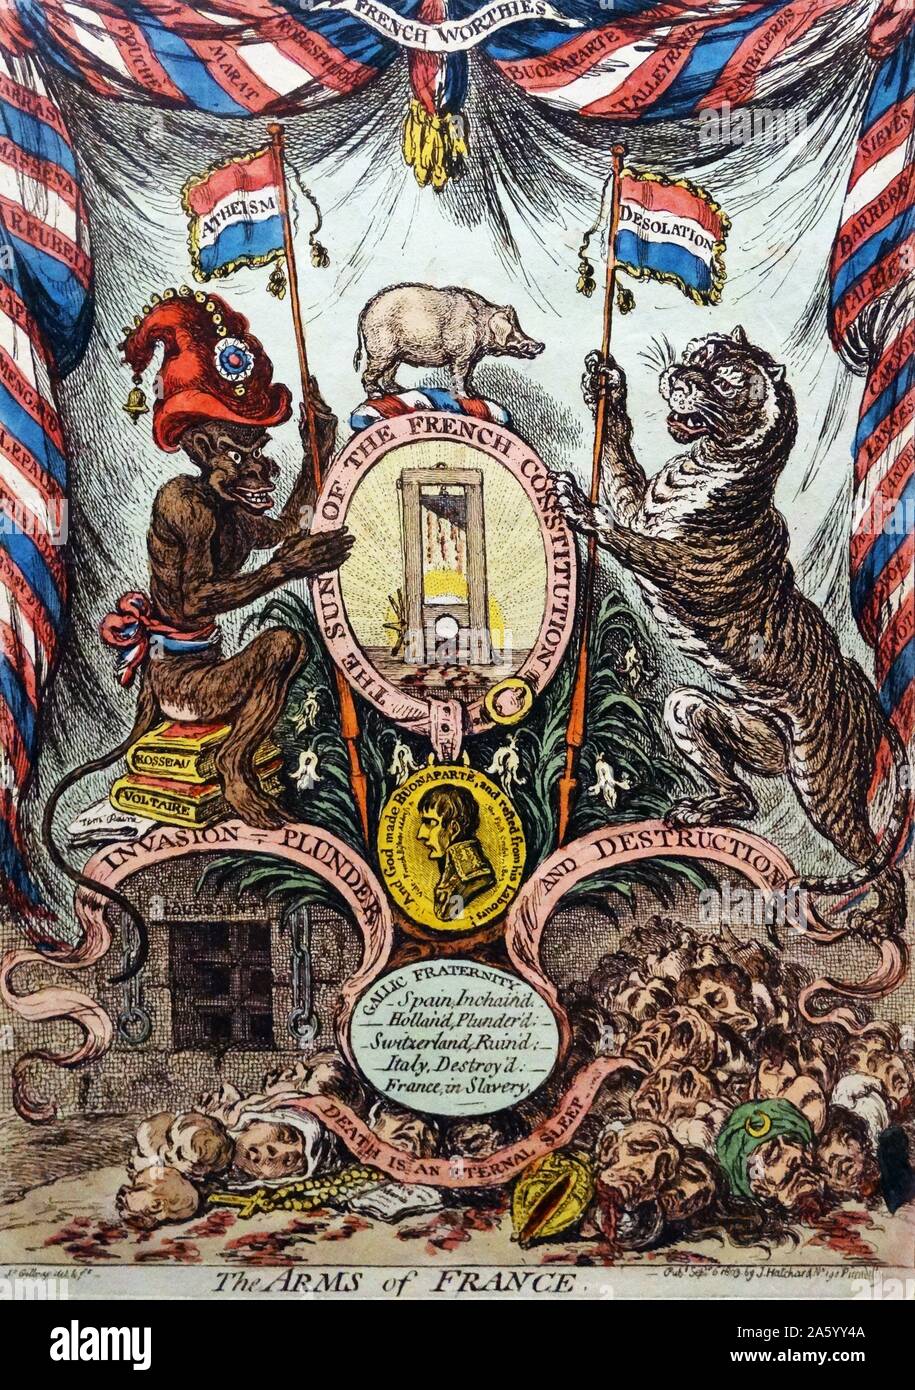 Handkolorierten Radierung mit dem Titel "The Arms of France" von James Gillray, (1751-1815) englische Karikaturist und Grafiker berühmt für seine geätzten politischen und gesellschaftlichen Satiren. Datiert 1803 Stockfoto